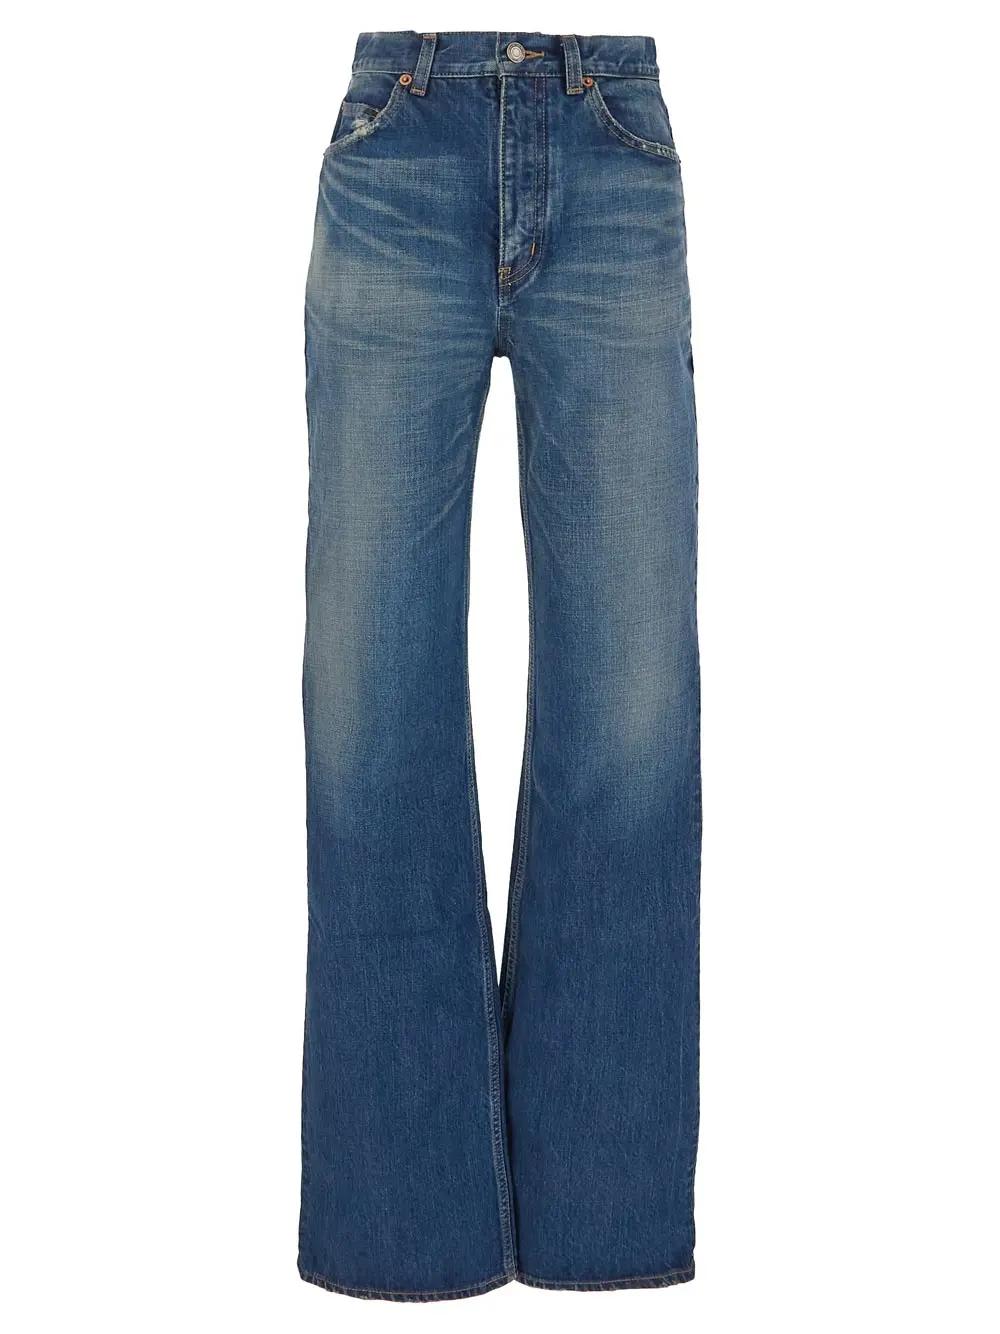 Saint Laurent 70s Jeans